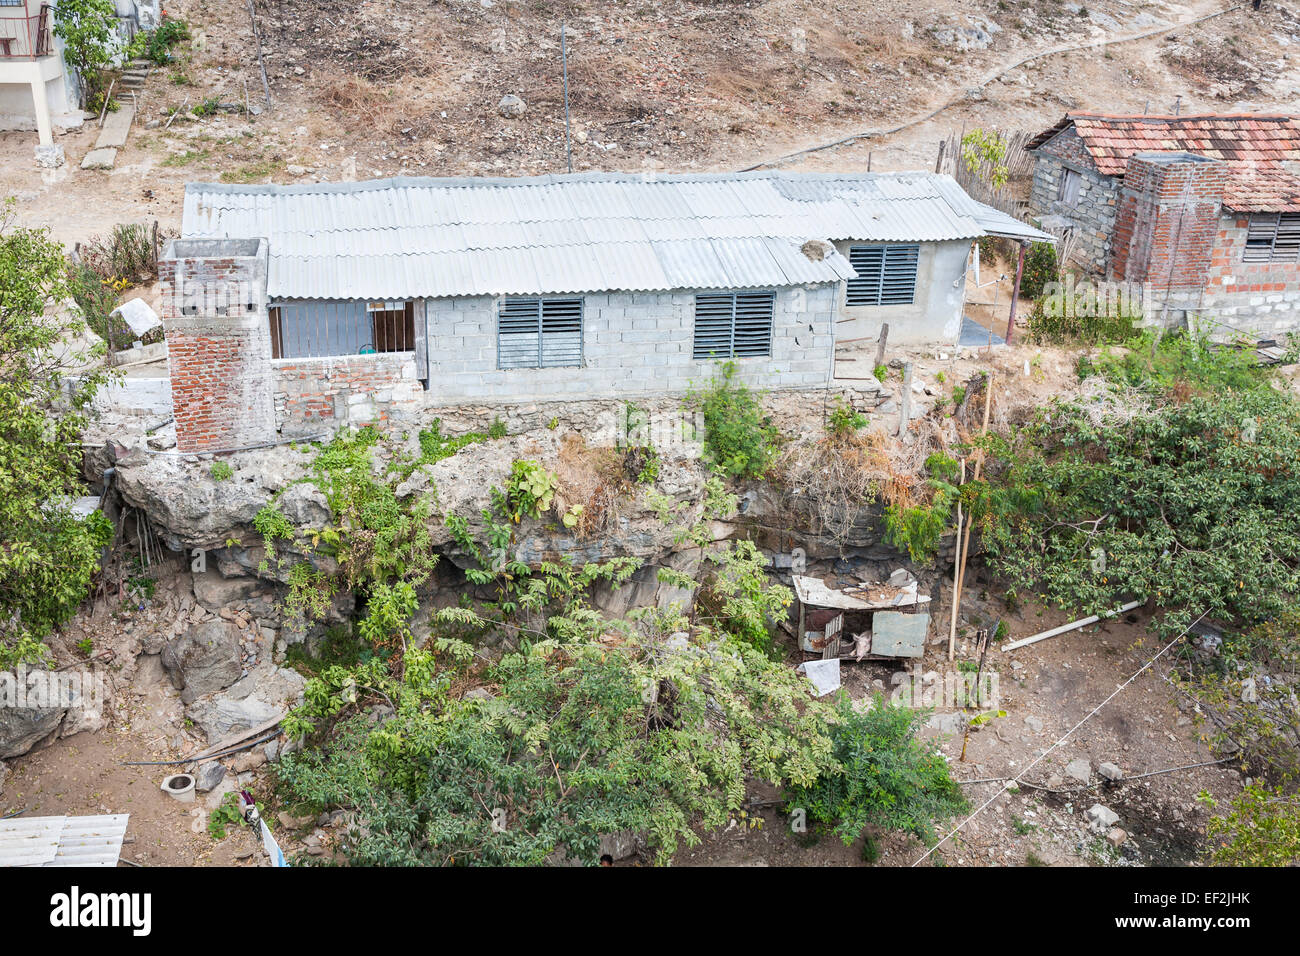 Cubano lo stile di vita di povertà: tipico primitivo blocco breeze homestead capanna con ferro corrugato con tetto di maiale nel porcile in un povero villaggio vicino a Trinidad, Cuba Foto Stock